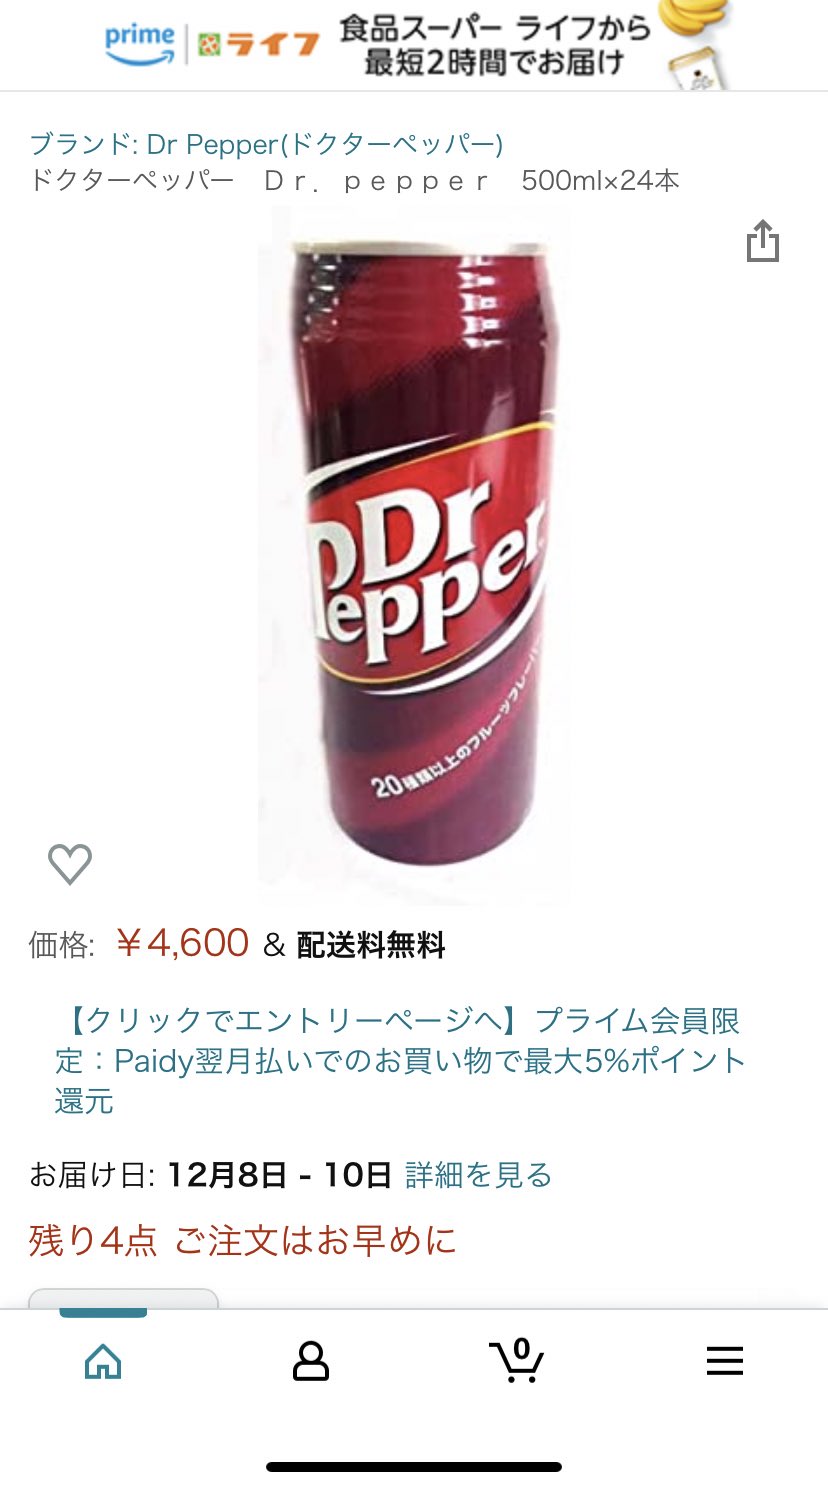 ス様 写真家 買わなくては ドクターペッパーの500ml 北海道と沖縄限定販売らしい 東京限定で1l缶か2lペットボトルで販売してくれないかなぁ T Co Lweqo3chy0 Twitter